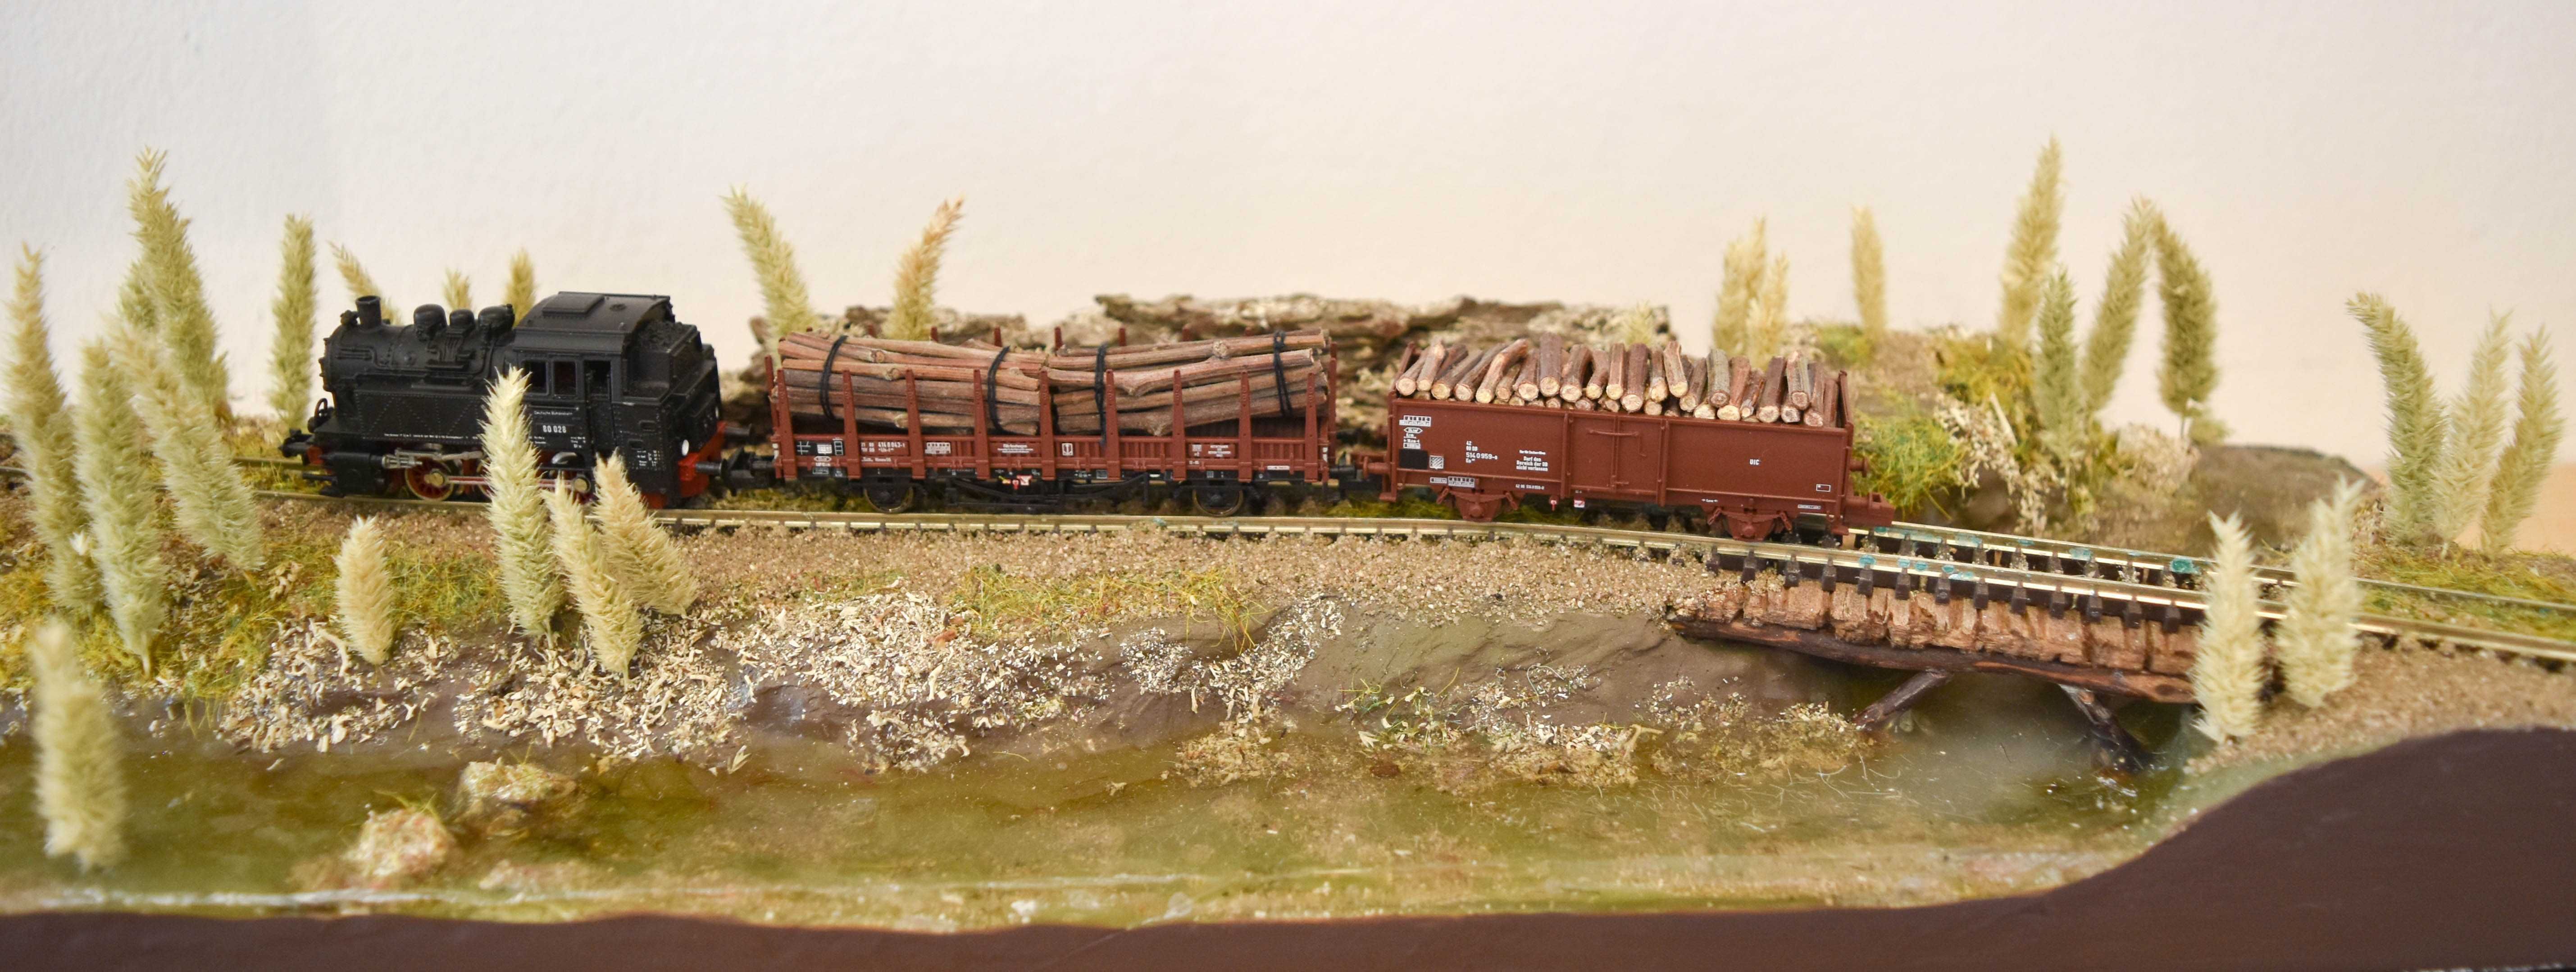 Diorama expositor de comboios escala N - novo